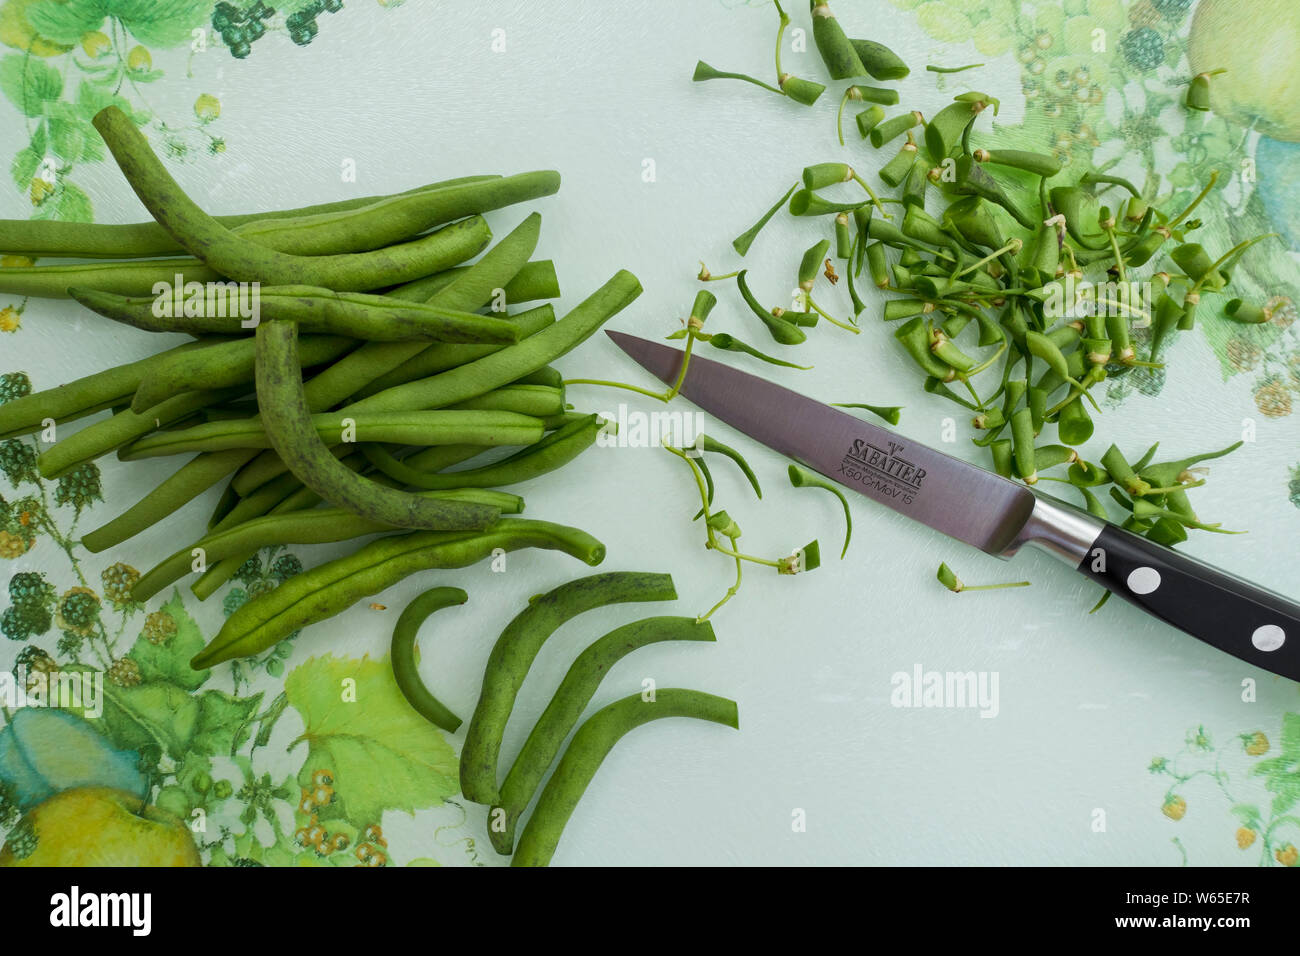 Gros plan sur les haricots verts crus hachés légumes légumes légumes légumes dans une cuisine prête à cuisiner avec un couteau et une planche à découper Banque D'Images